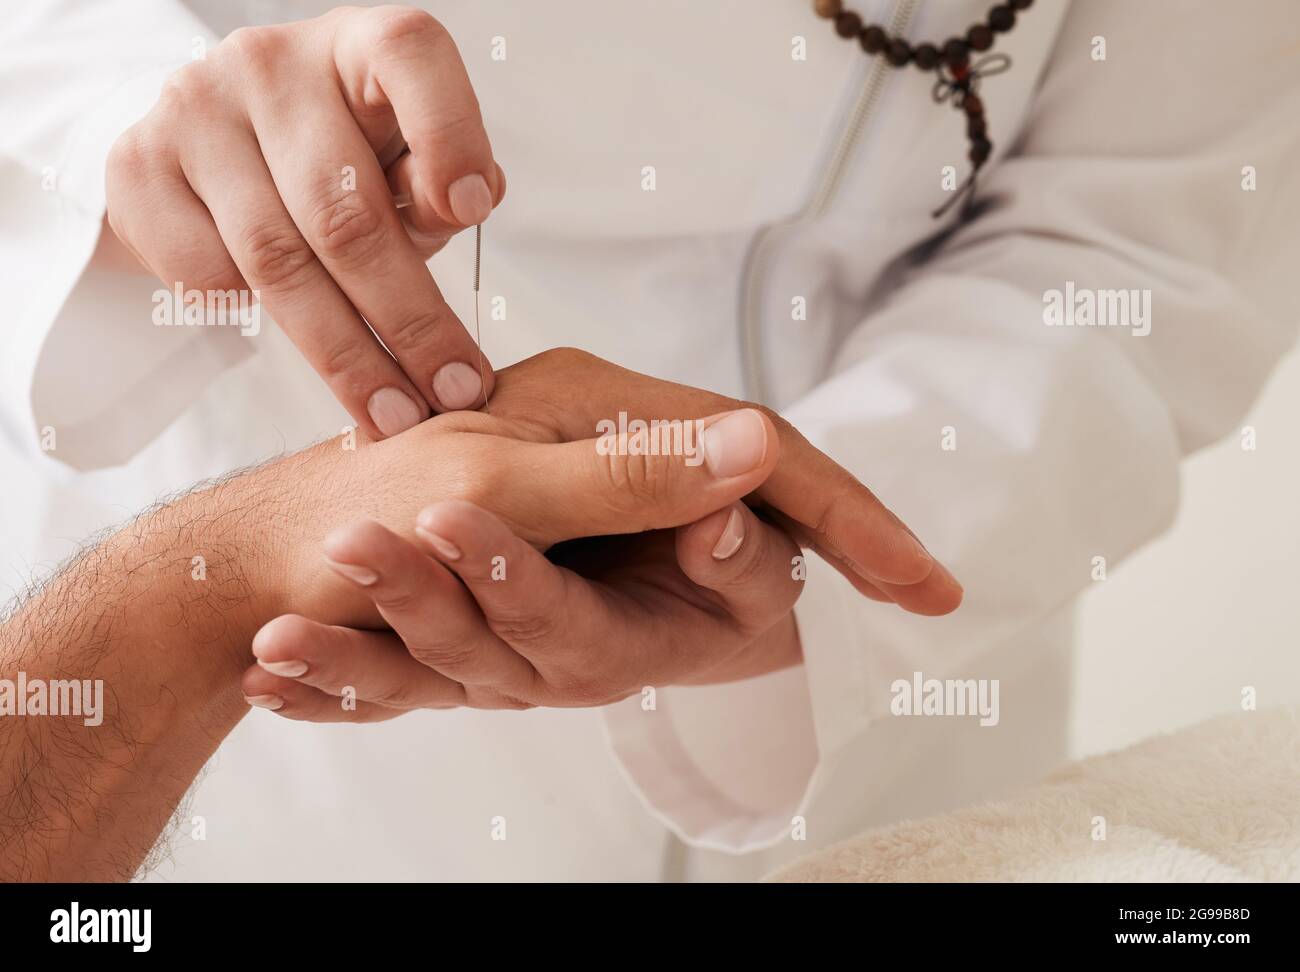 Der Reflexologe führt die Akupunkturnadel in die Handgelenkshand des Patienten ein. Akupunkturbehandlung, Reflexzonenmassage, alternative Medizin Stockfoto